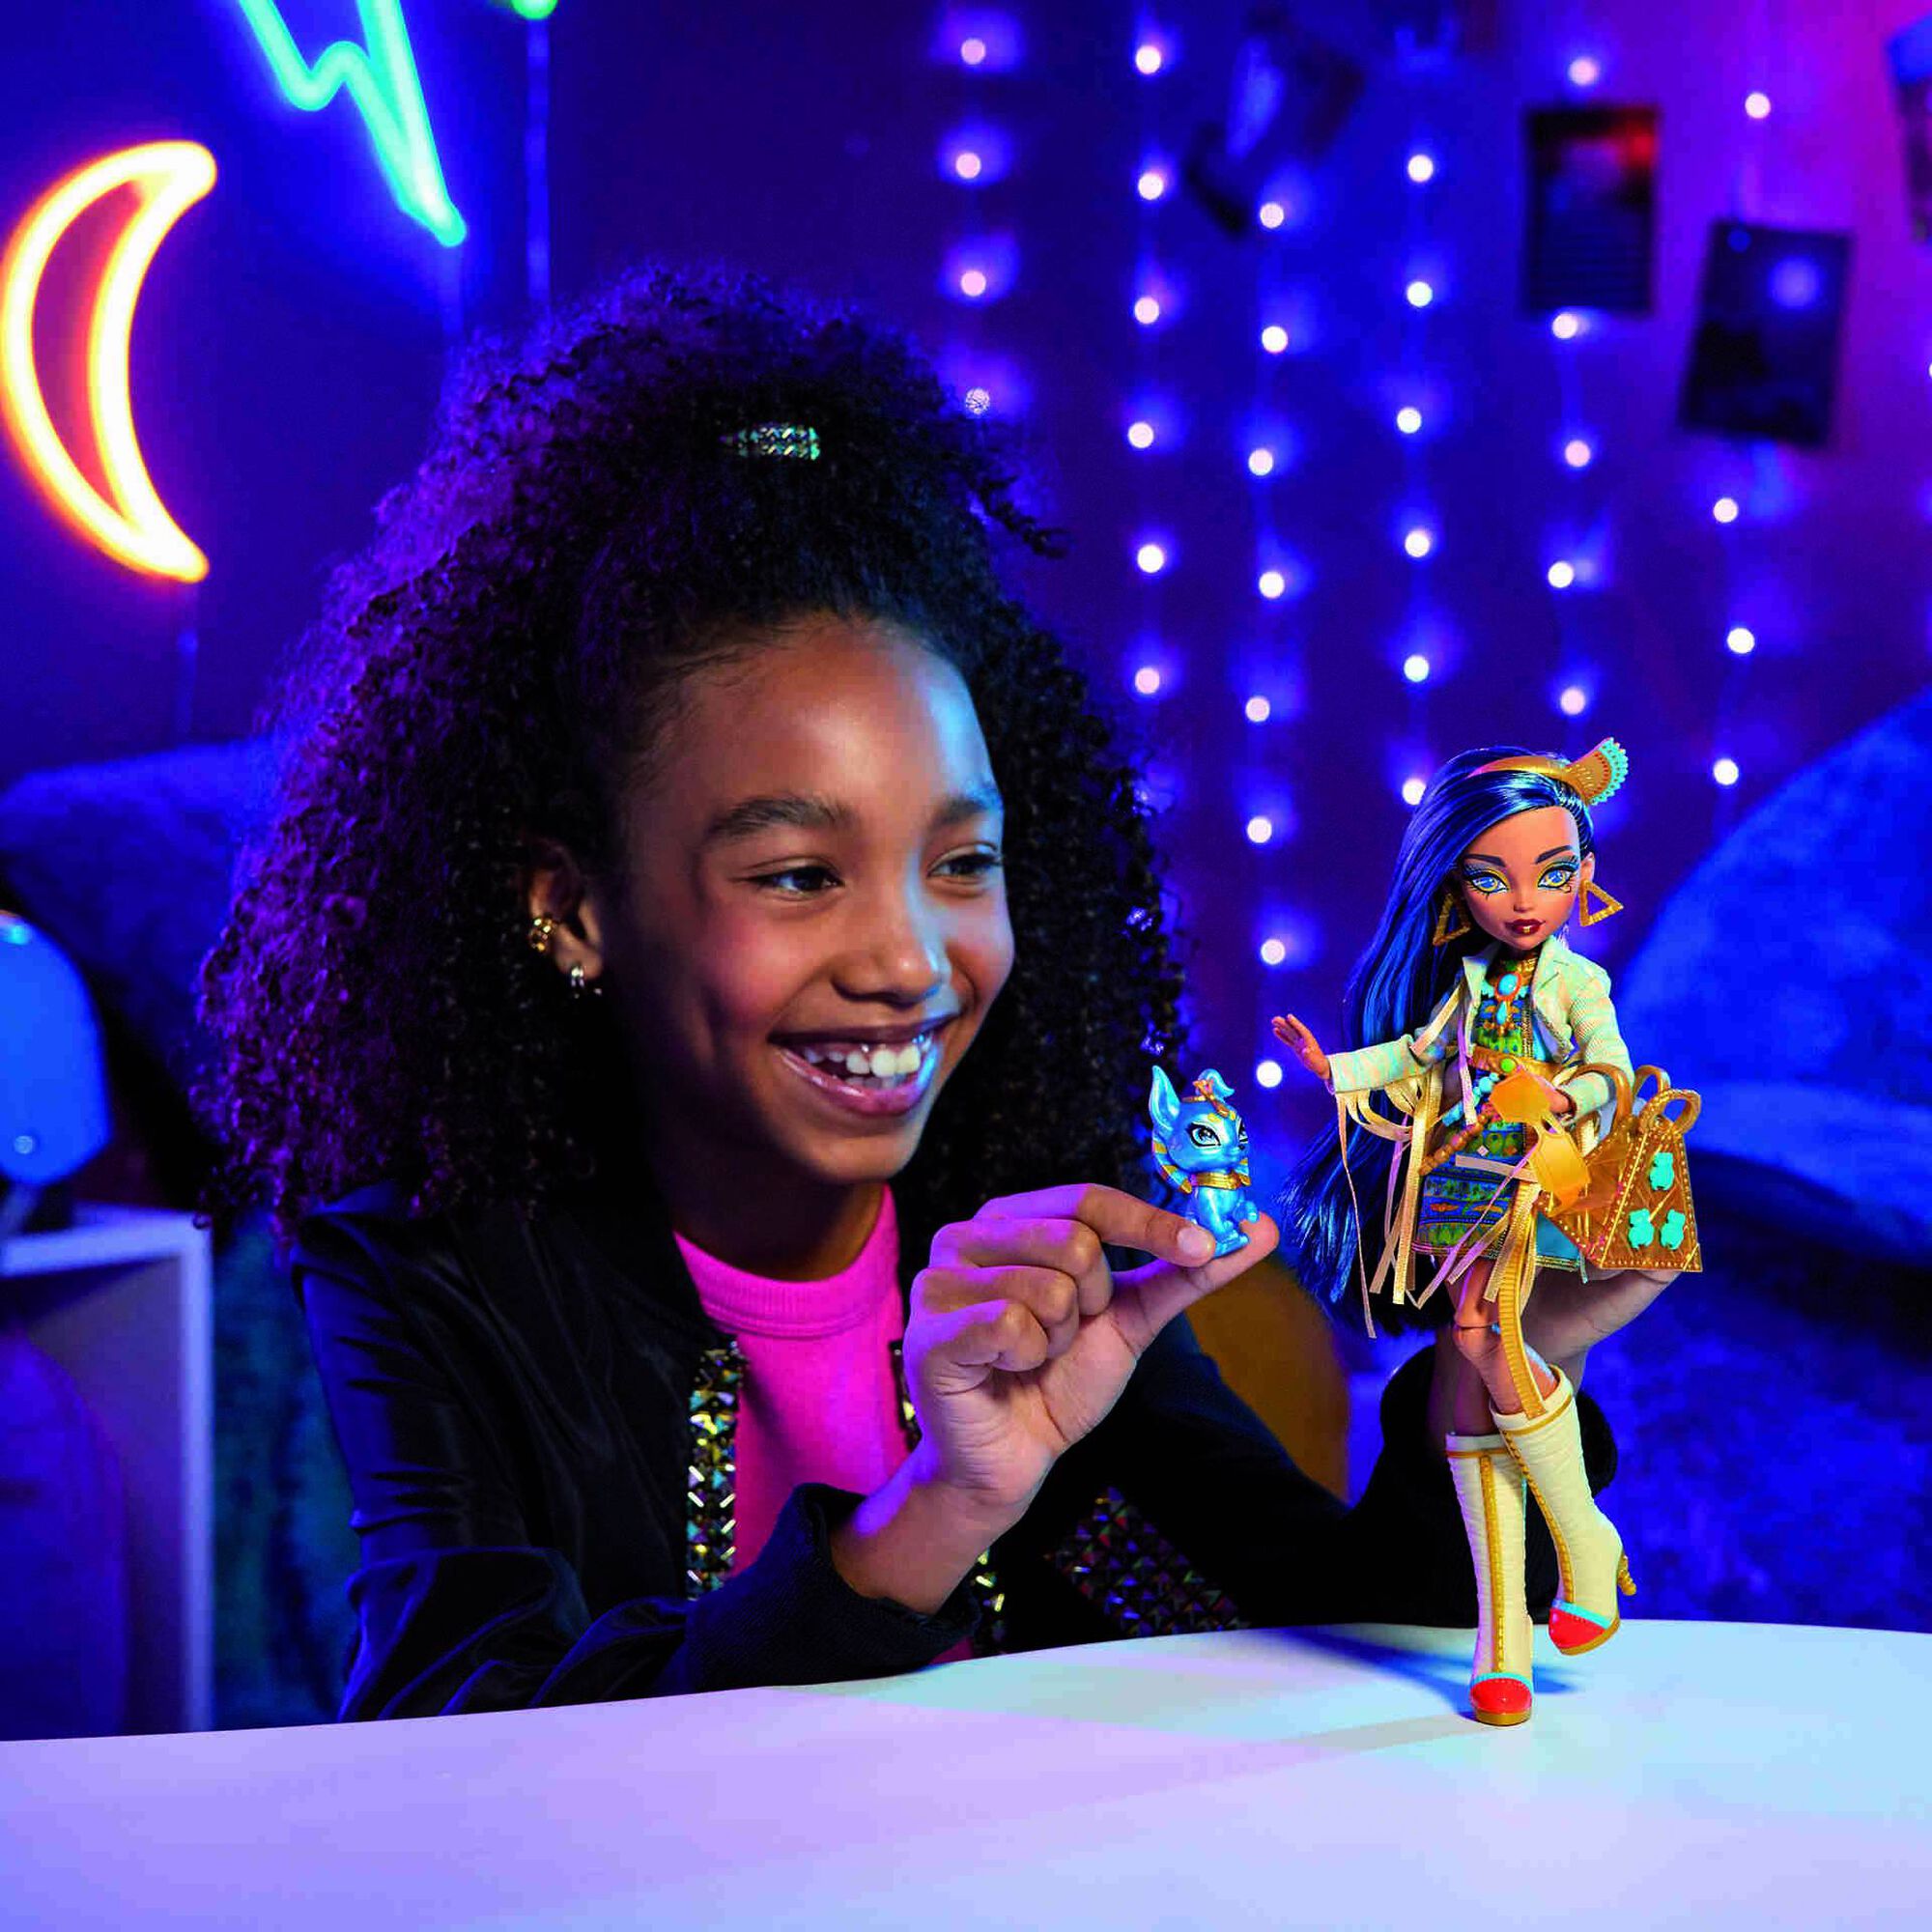 Boneca Barbie peluche da Família Monster de Jardim, brinquedo de